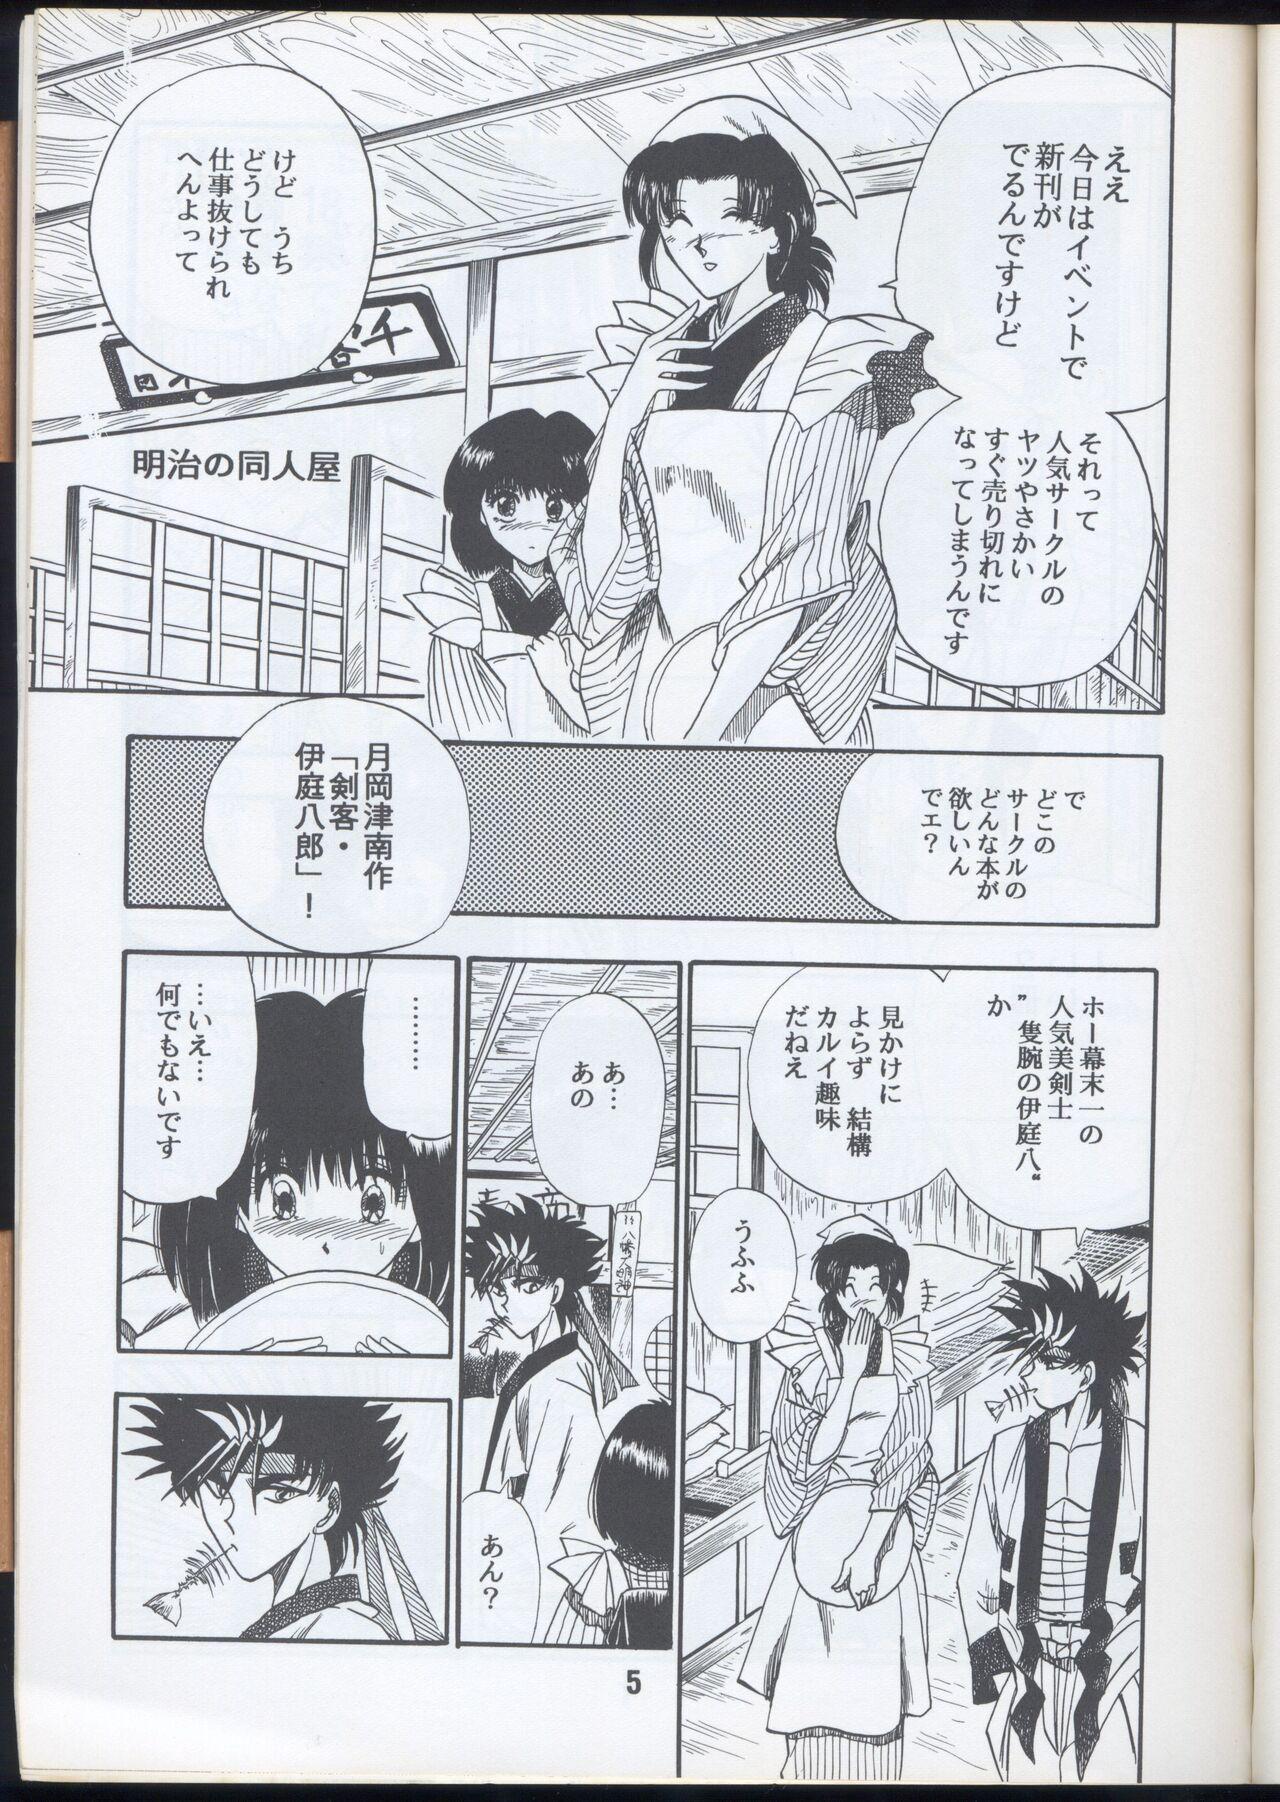 Money Rurouni Kenshin Oro! 2 - Rurouni kenshin | samurai x Flaquita - Page 5